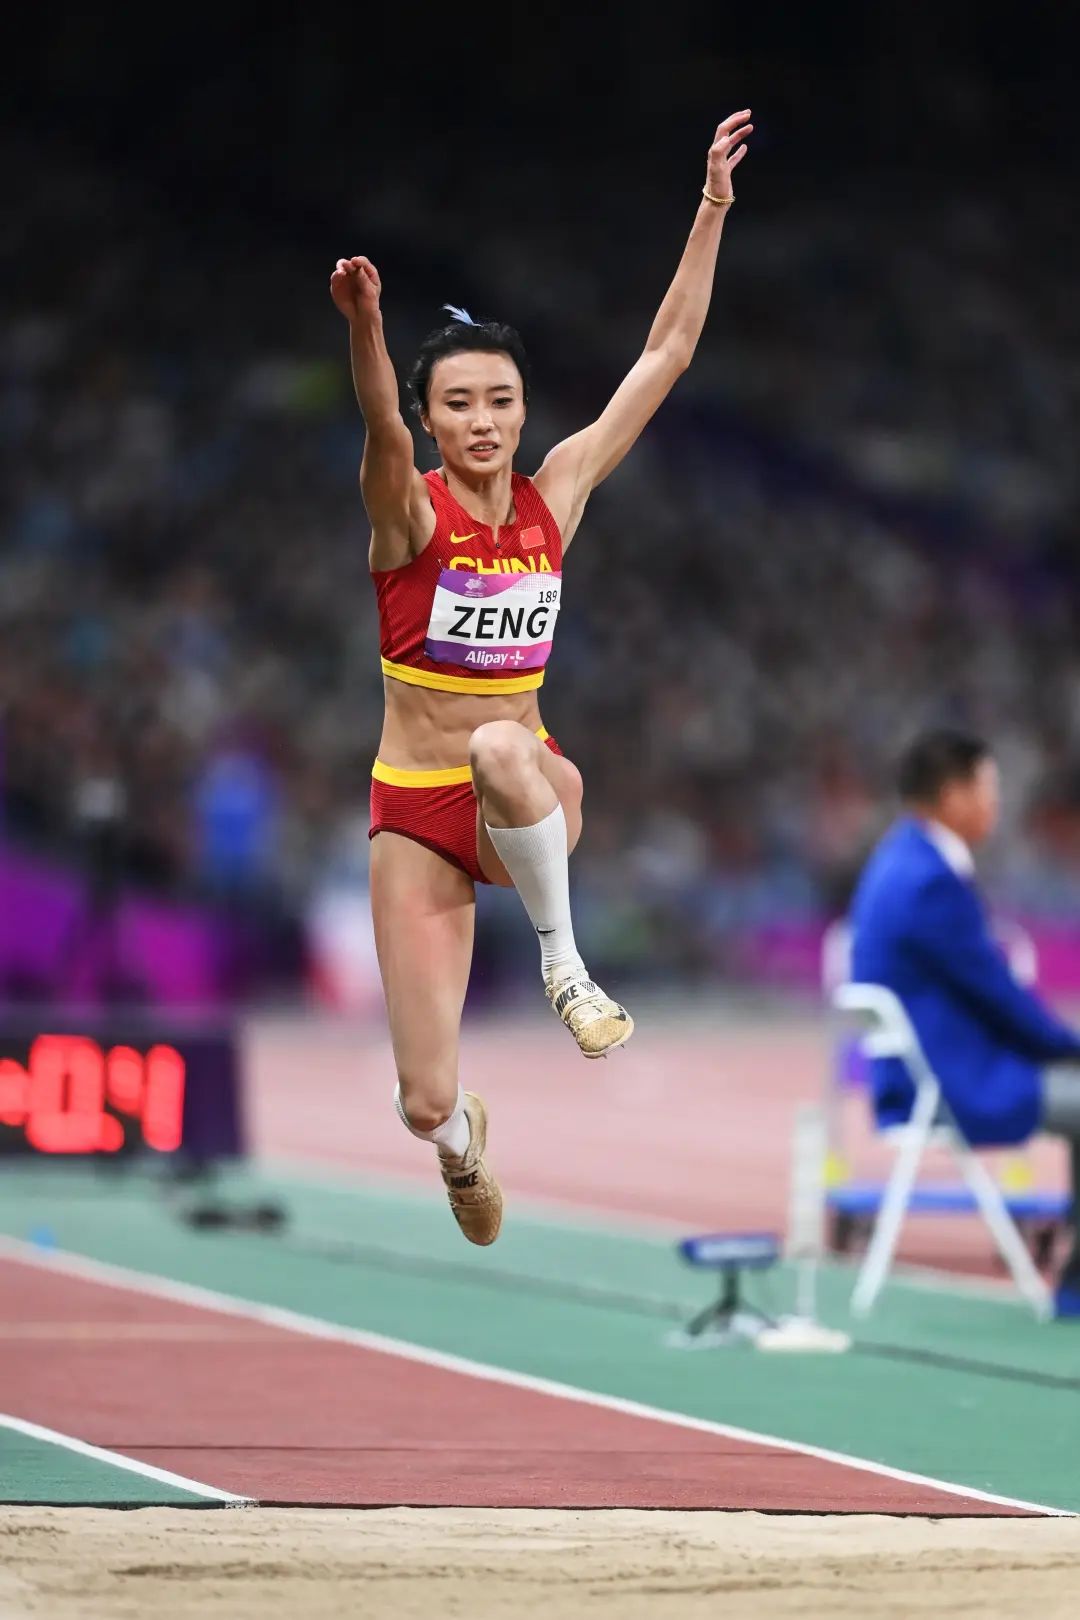 获得银牌夺得个人亚运首块奖牌这是广东运动员在杭州亚运会上获得的第